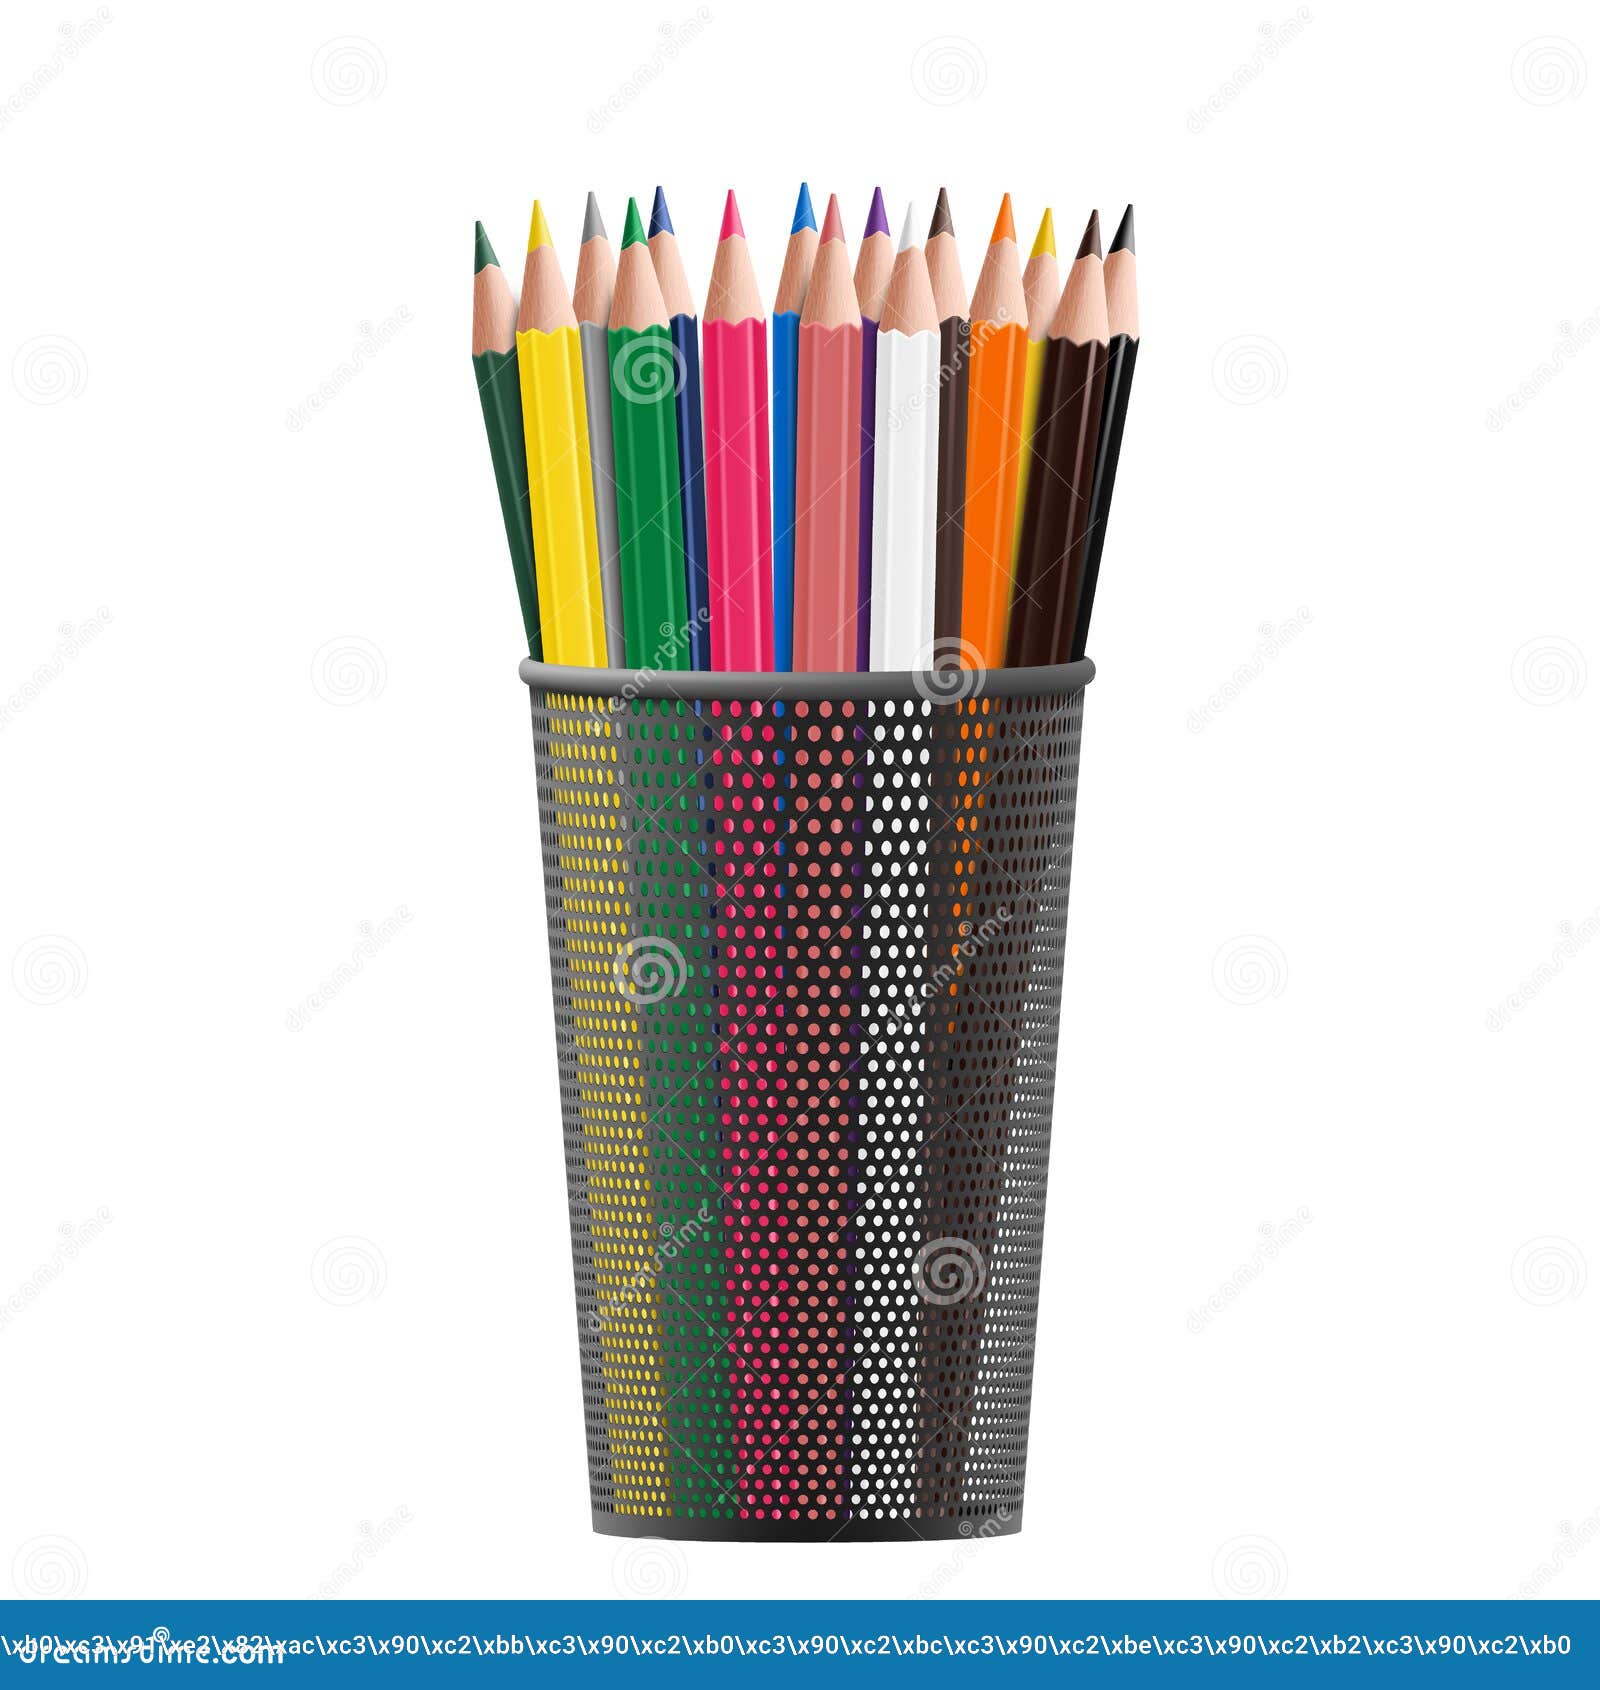 51,157 Pencil Case Images, Stock Photos, 3D objects, & Vectors